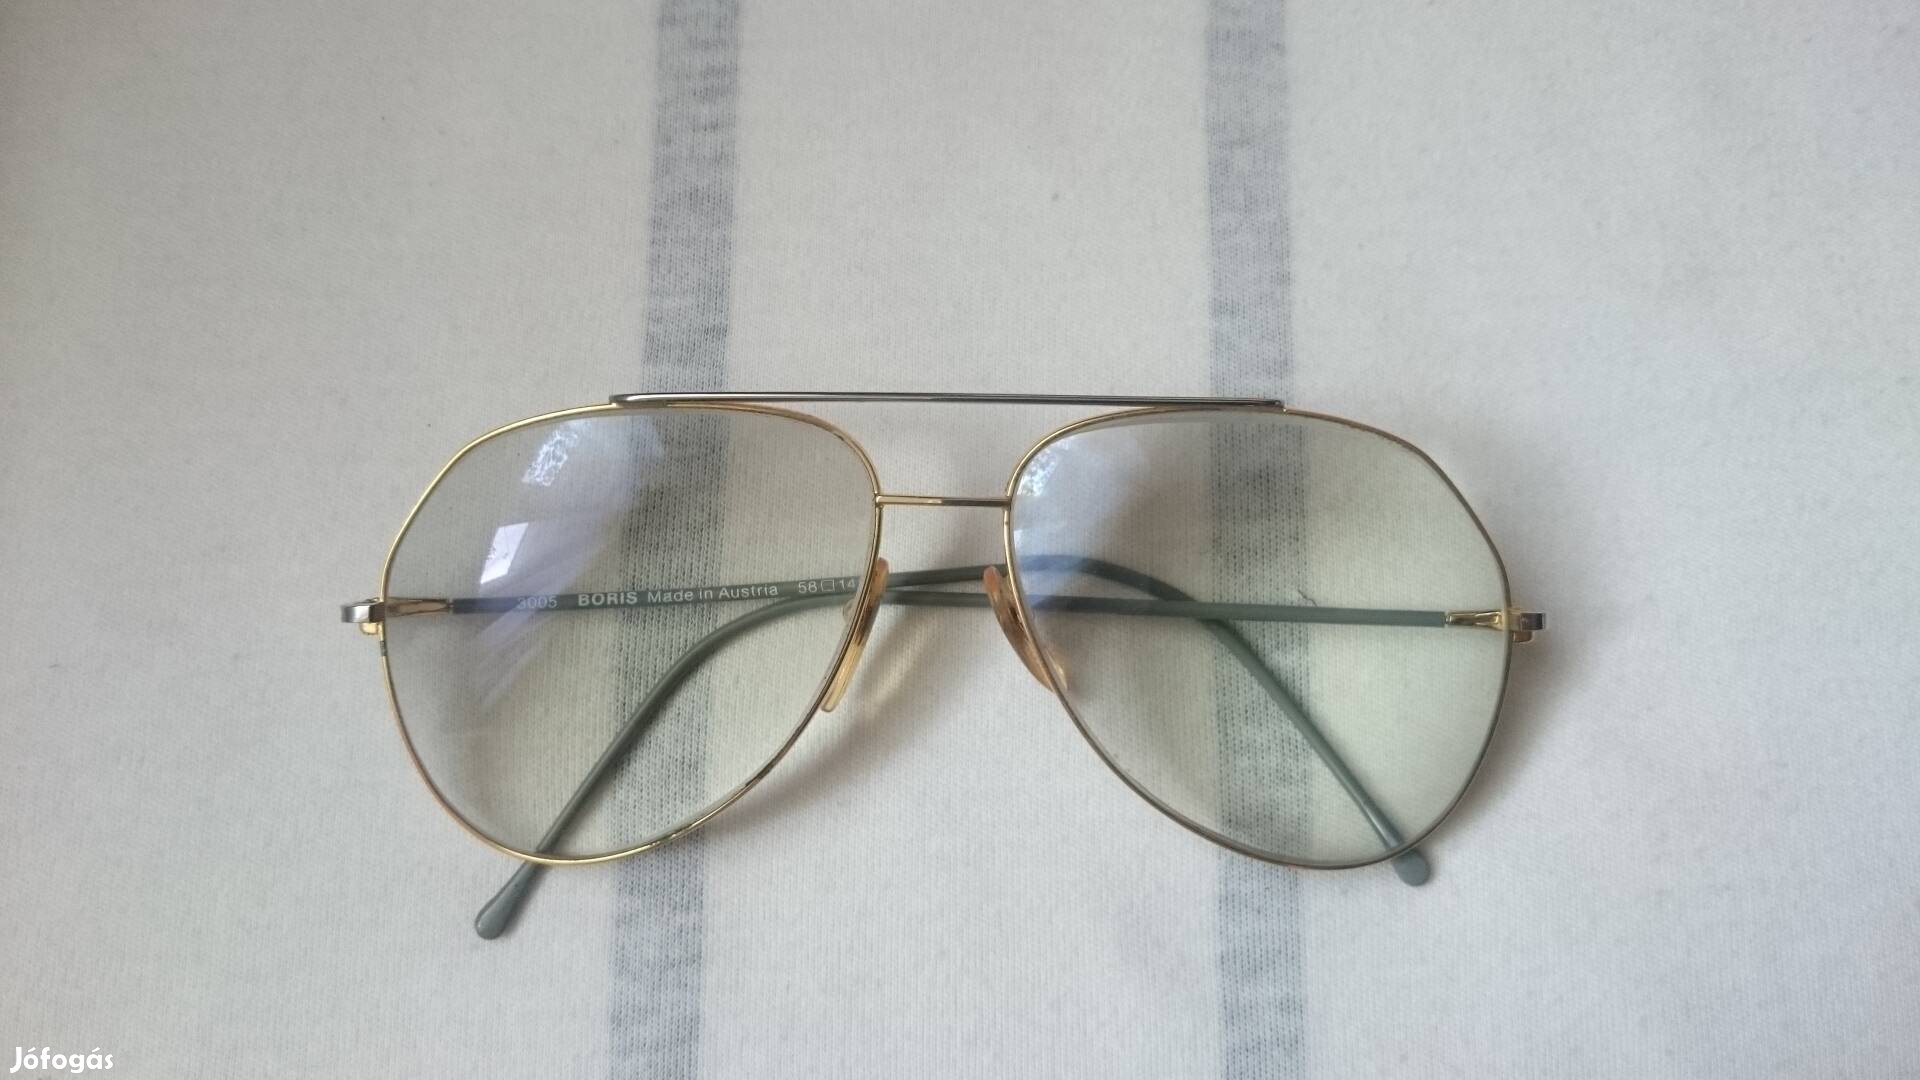 Boris vintage retro osztrák napszemüveg ritkaság, kuriózum!